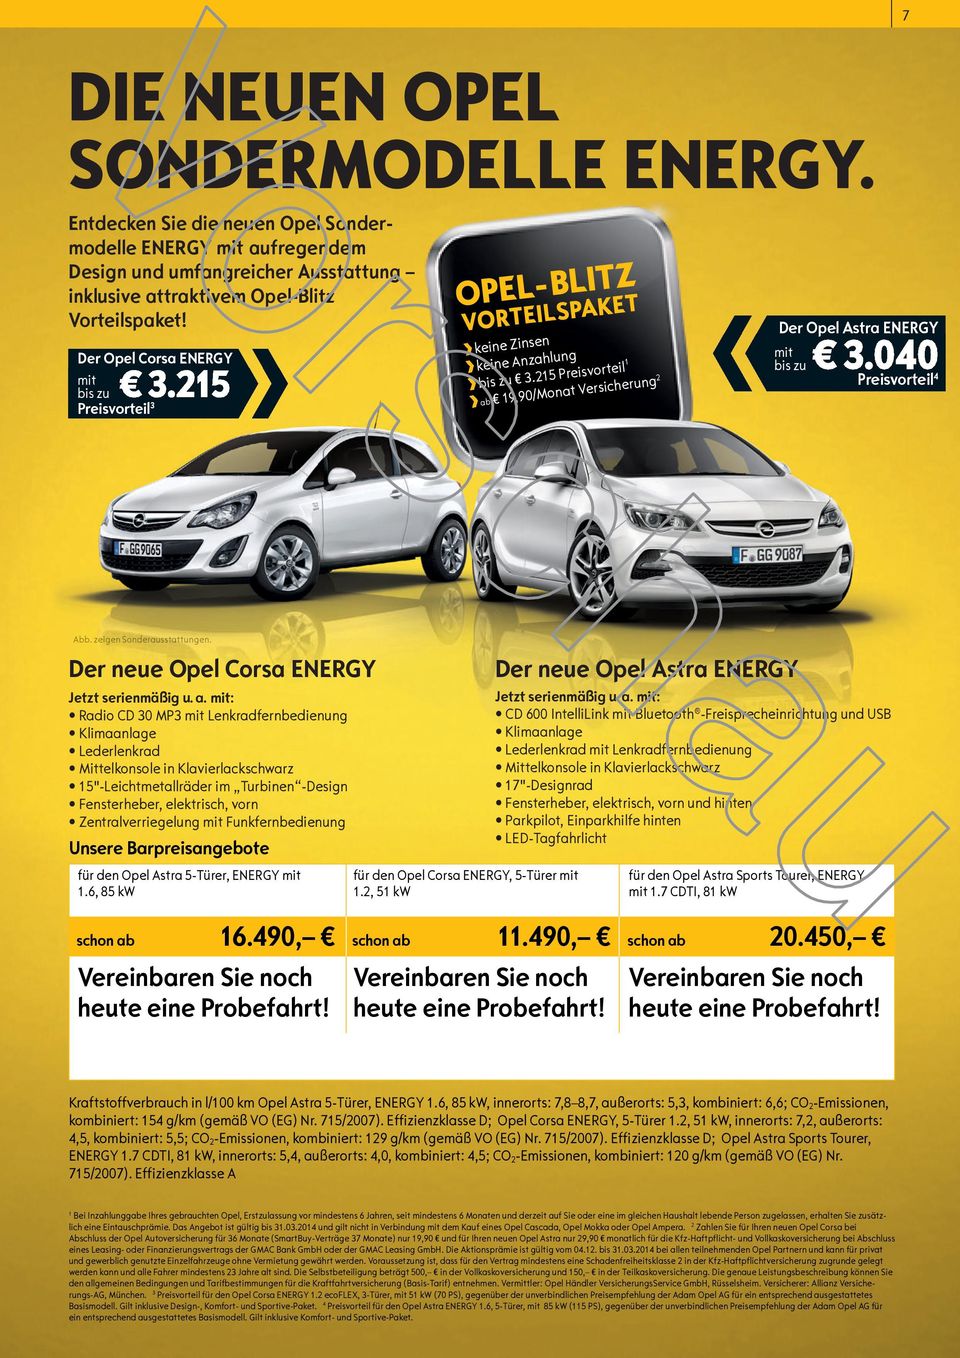 25 Preisvorteil 0/Monat Versicherung 2 ab 9,90/Monat Versicherung 2 Der Opel Astra ENERGY mit bis zu 3.040 Preisvorteil 4 Abb. zei eigen Sond eraussta stattun ttun gen.